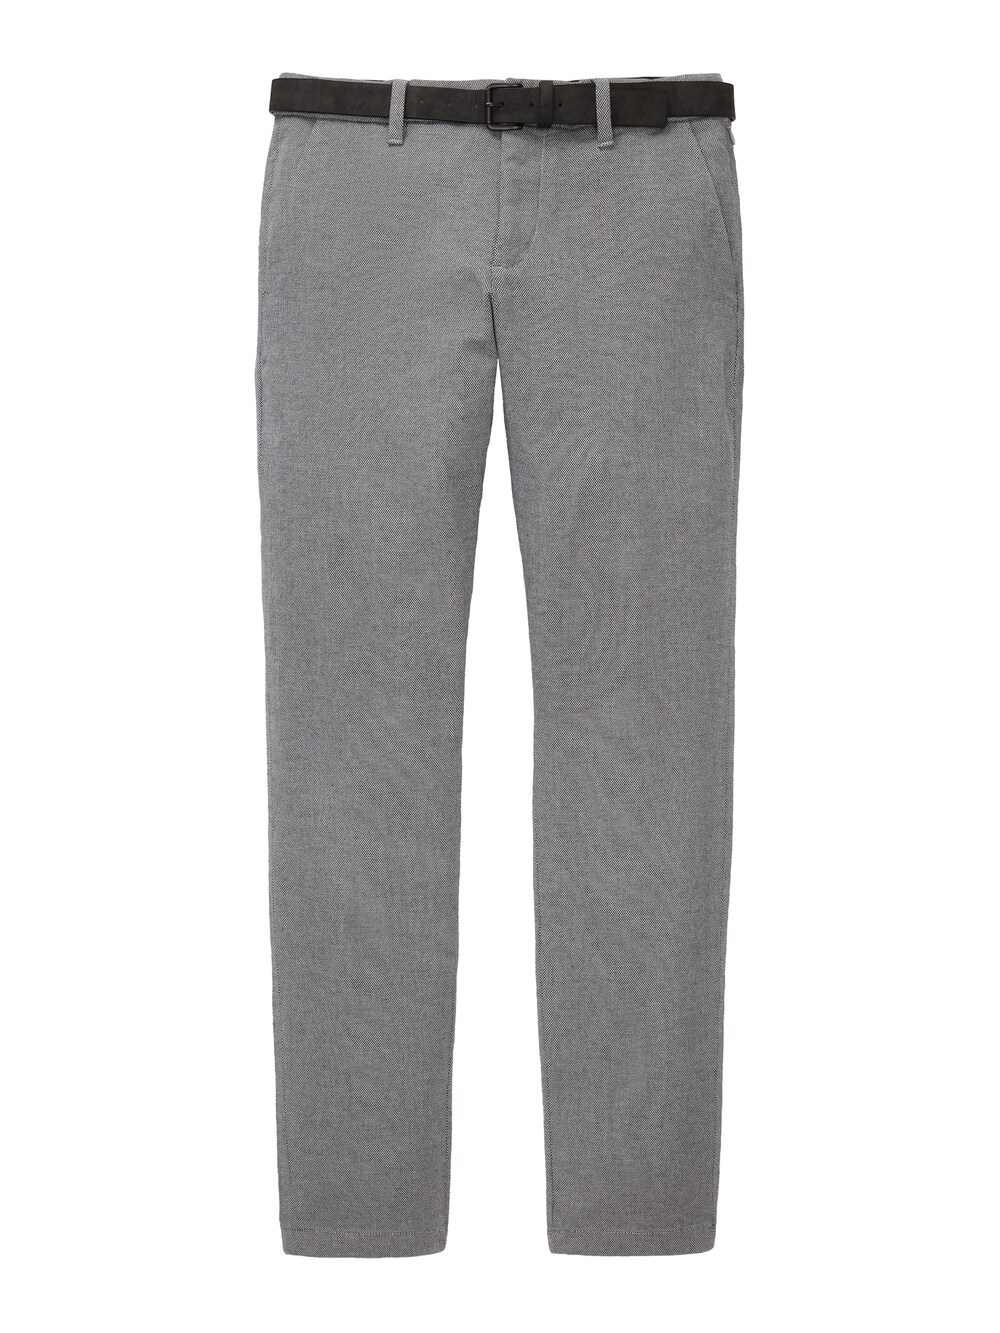 Брюки-чиносы узкого кроя Tom Tailor, серый узкие брюки чиносы с поясом tom tailor серый